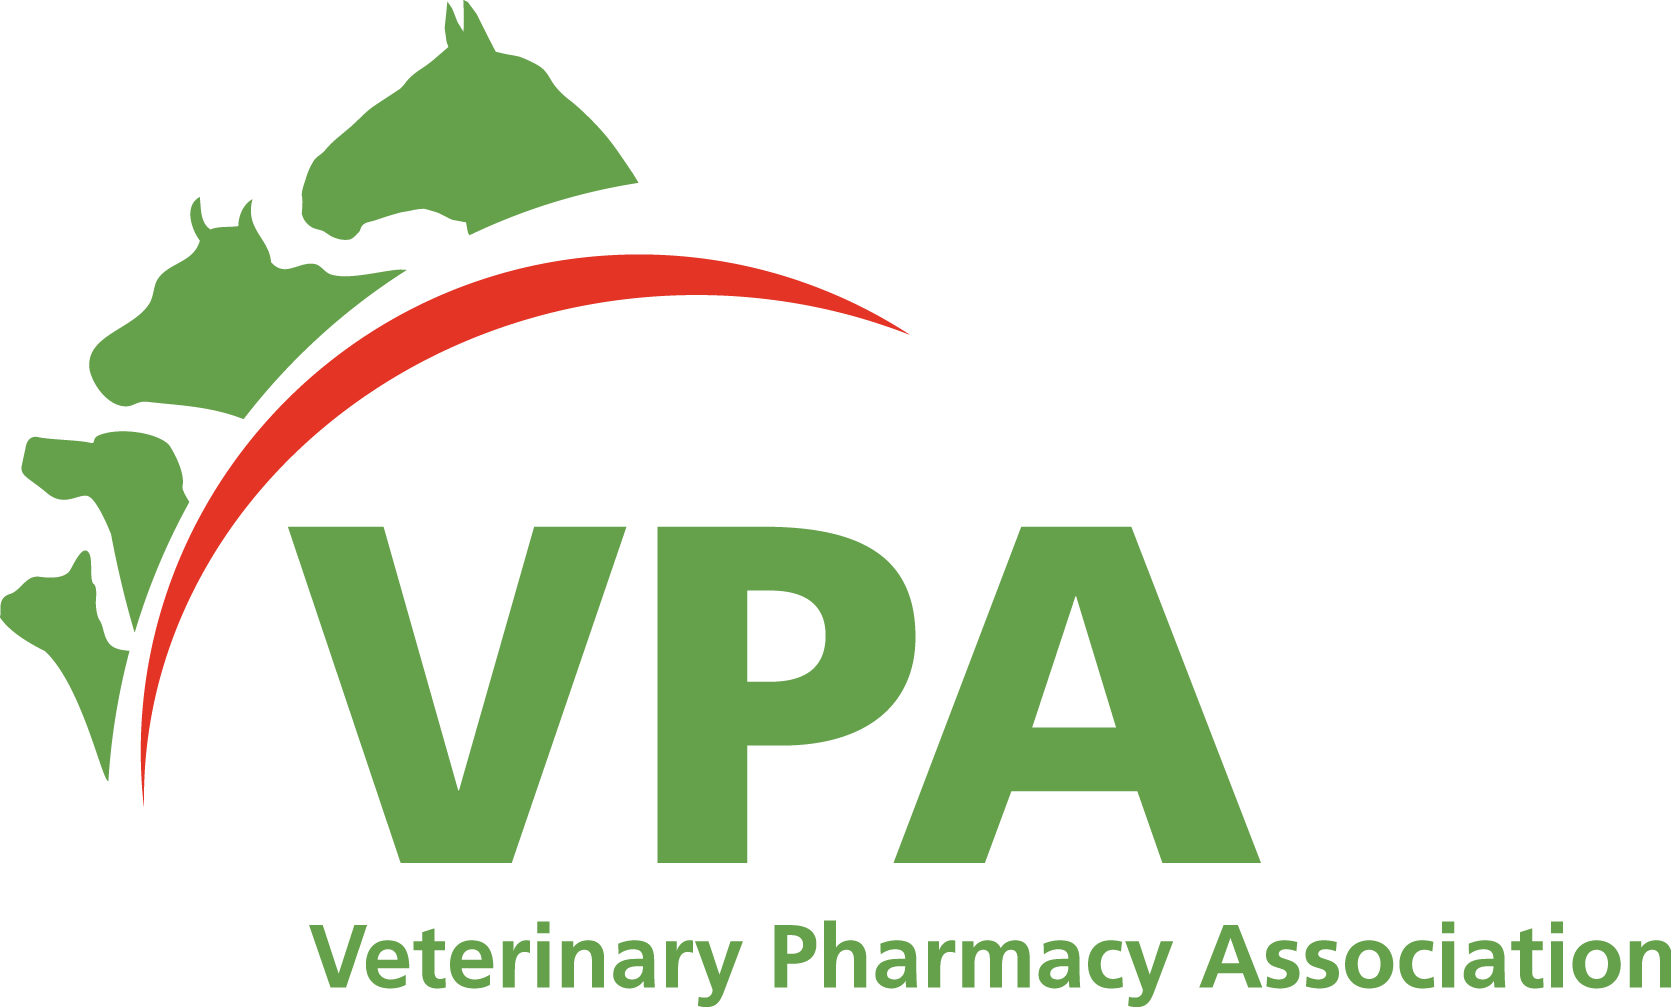 The Veterinary Pharmacy Association